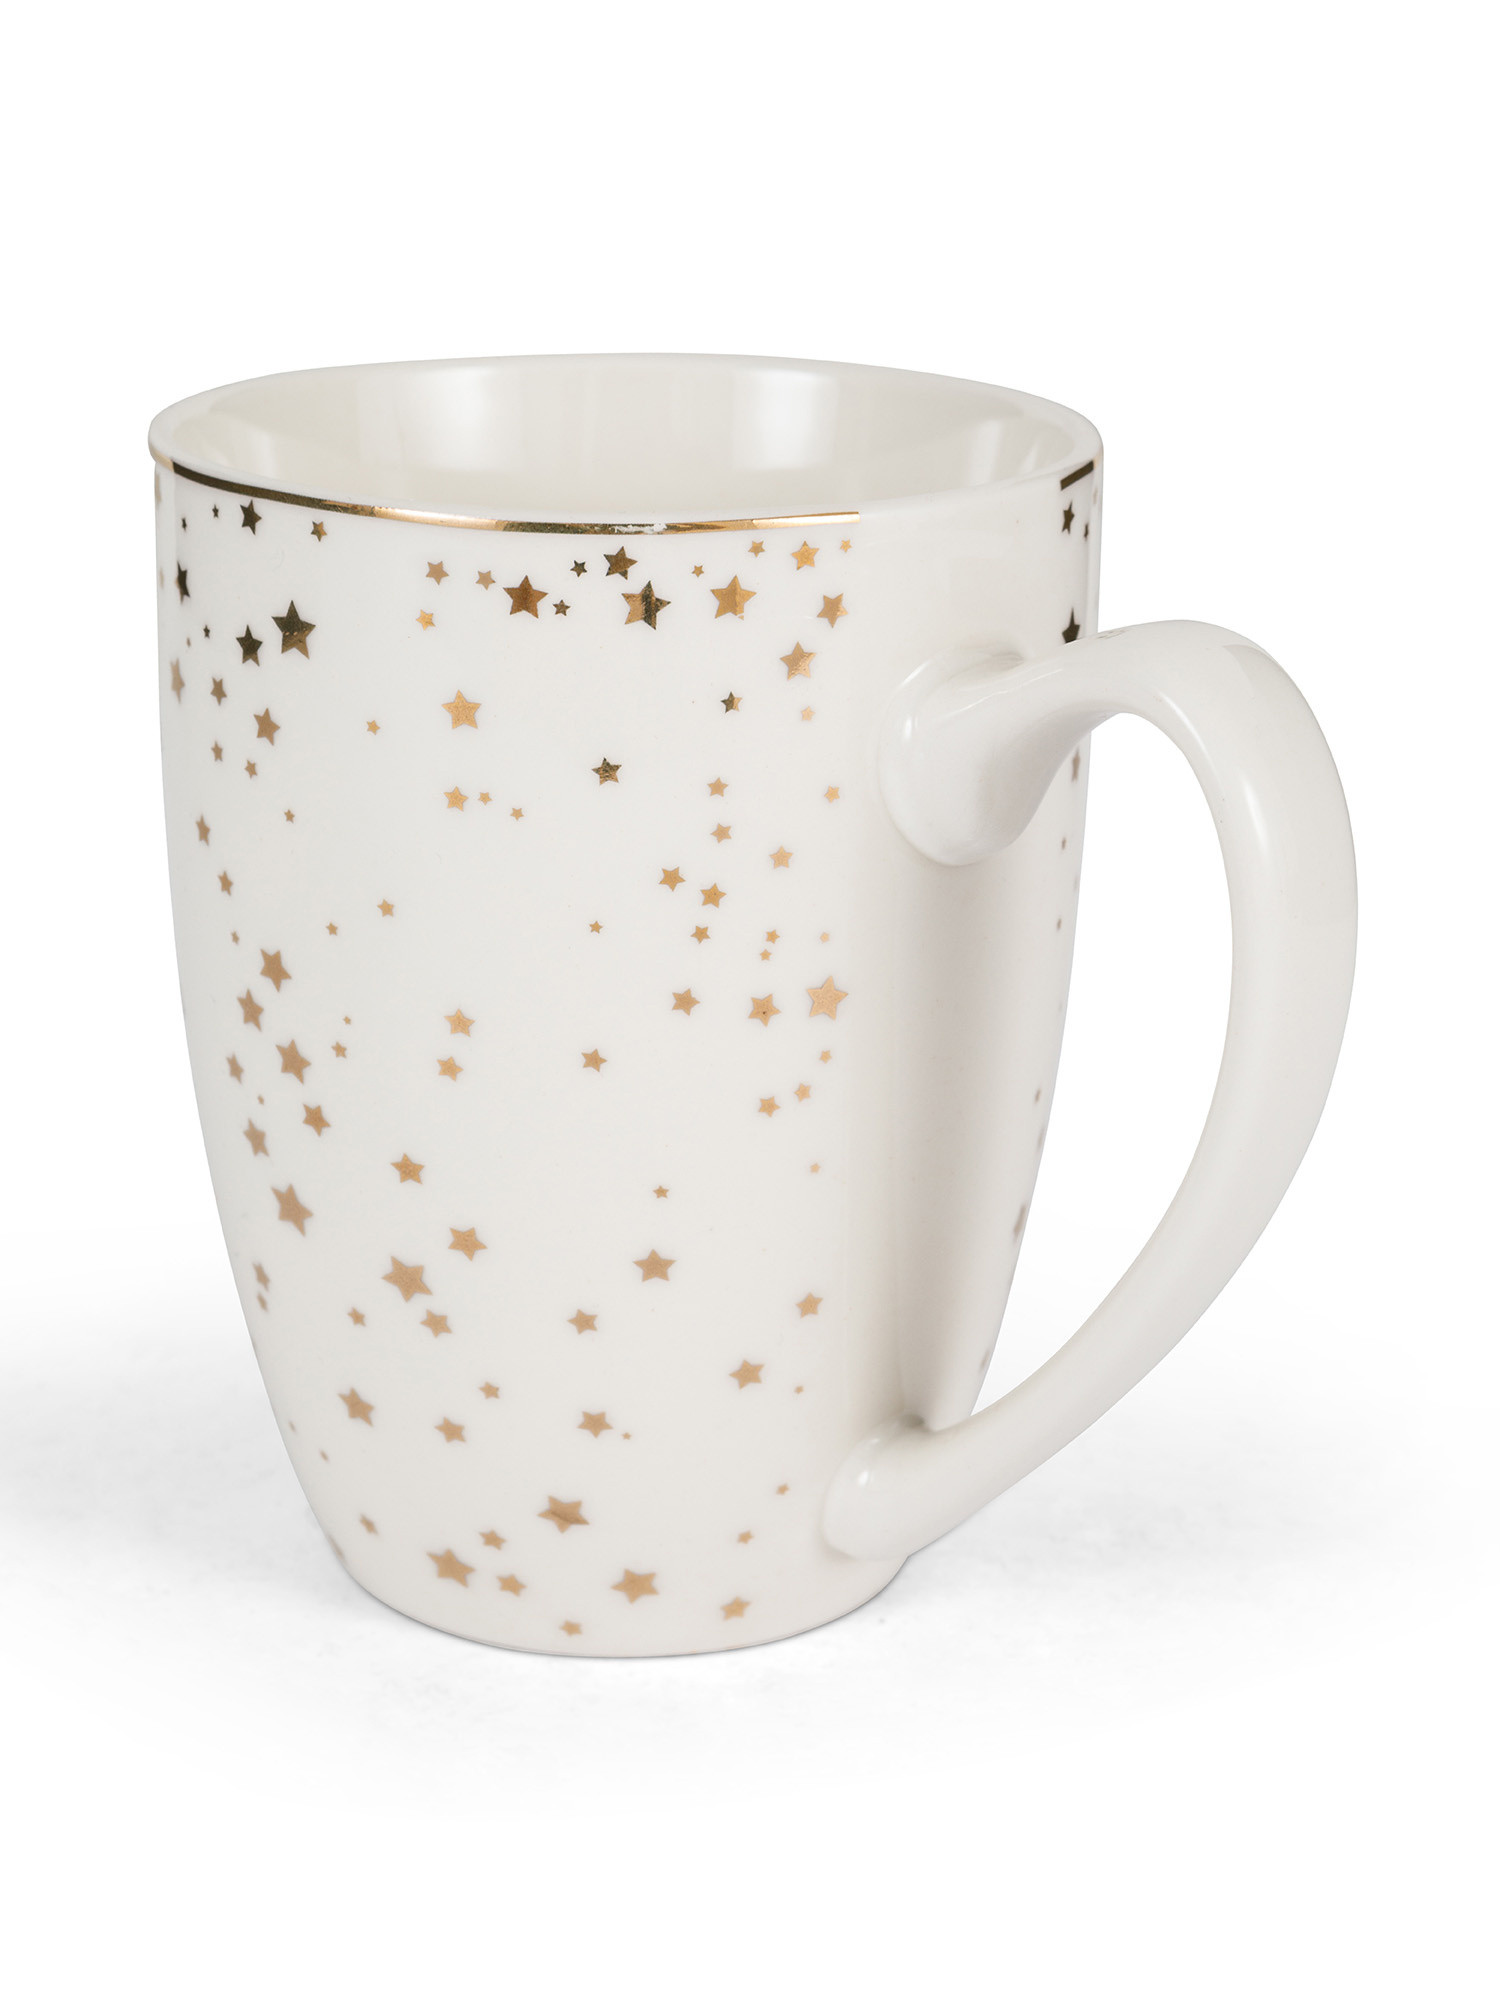 New bone china mug with stars, Gold, large image number 1